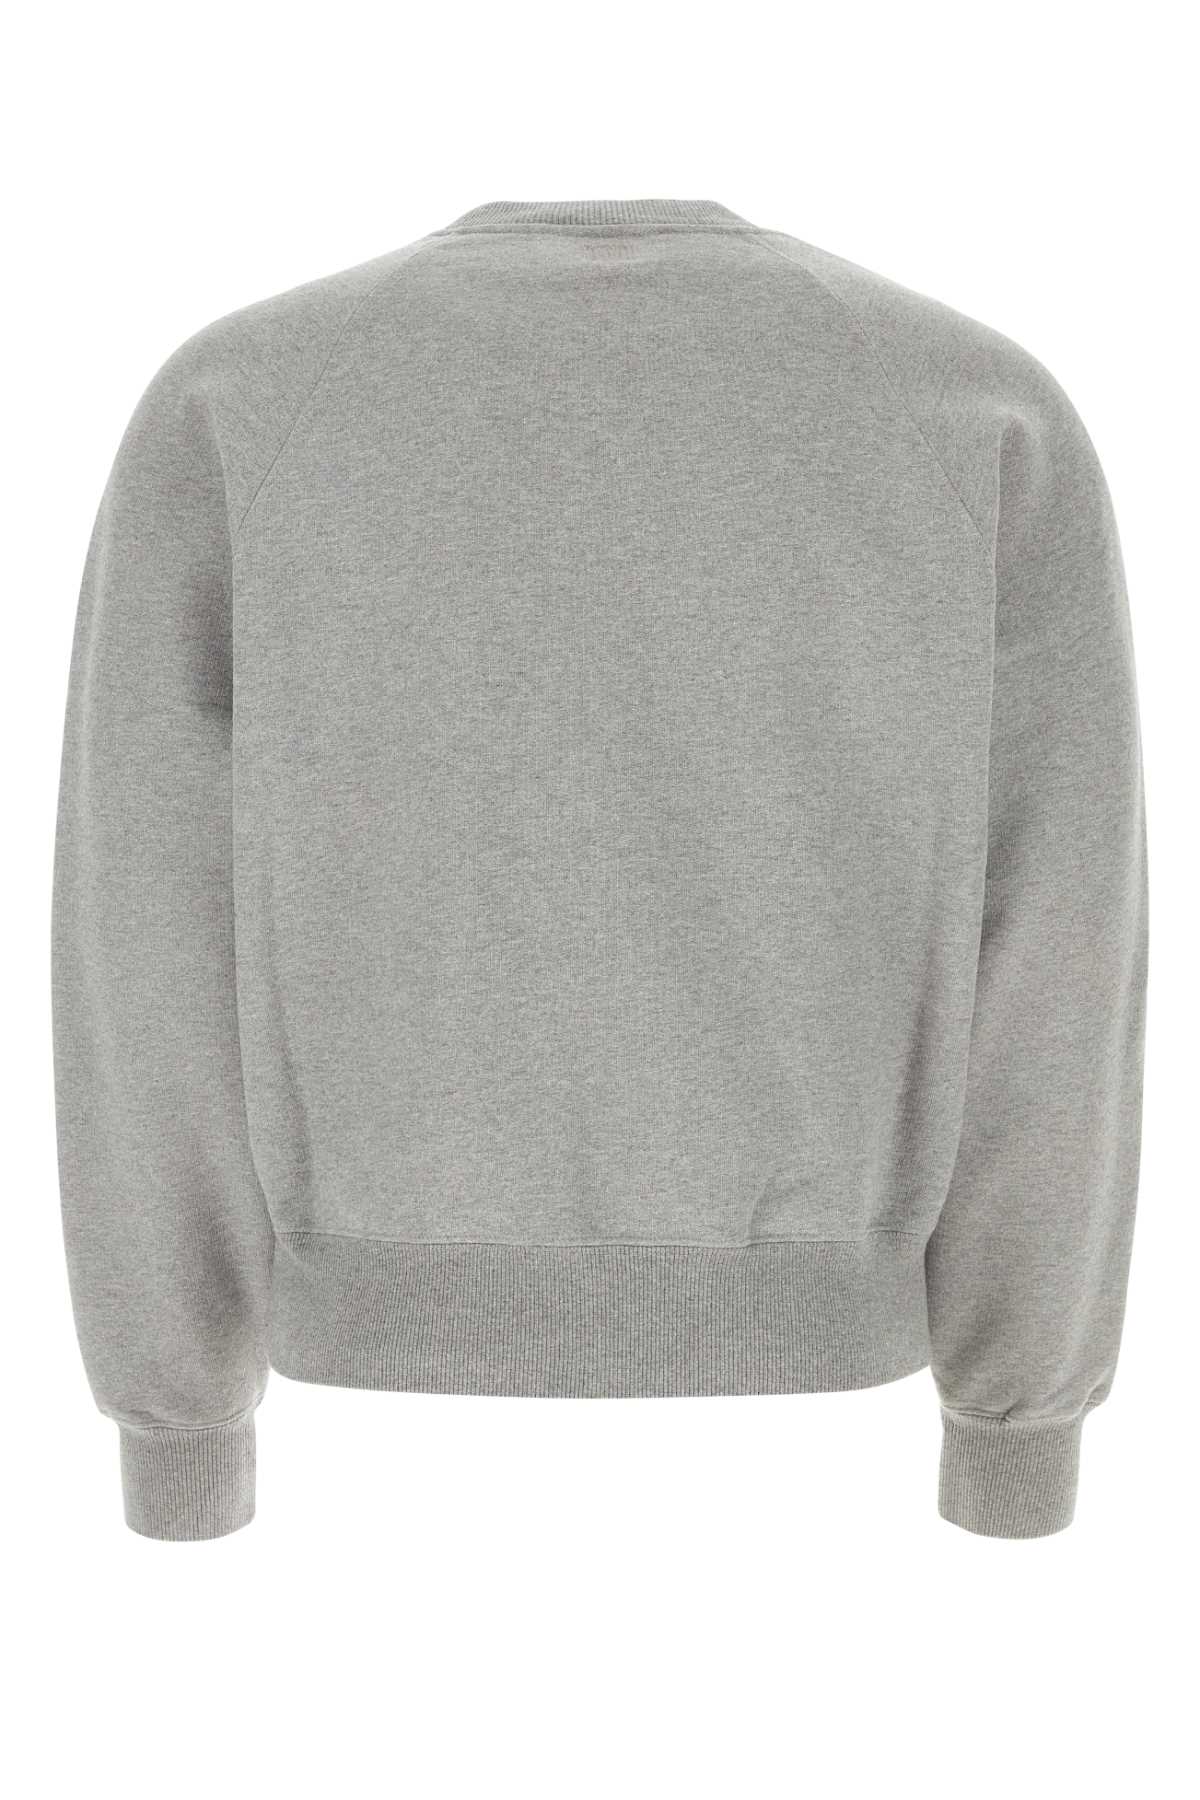 Shop Ami Alexandre Mattiussi Grey Cotton Sweatshirt In Heathergrey